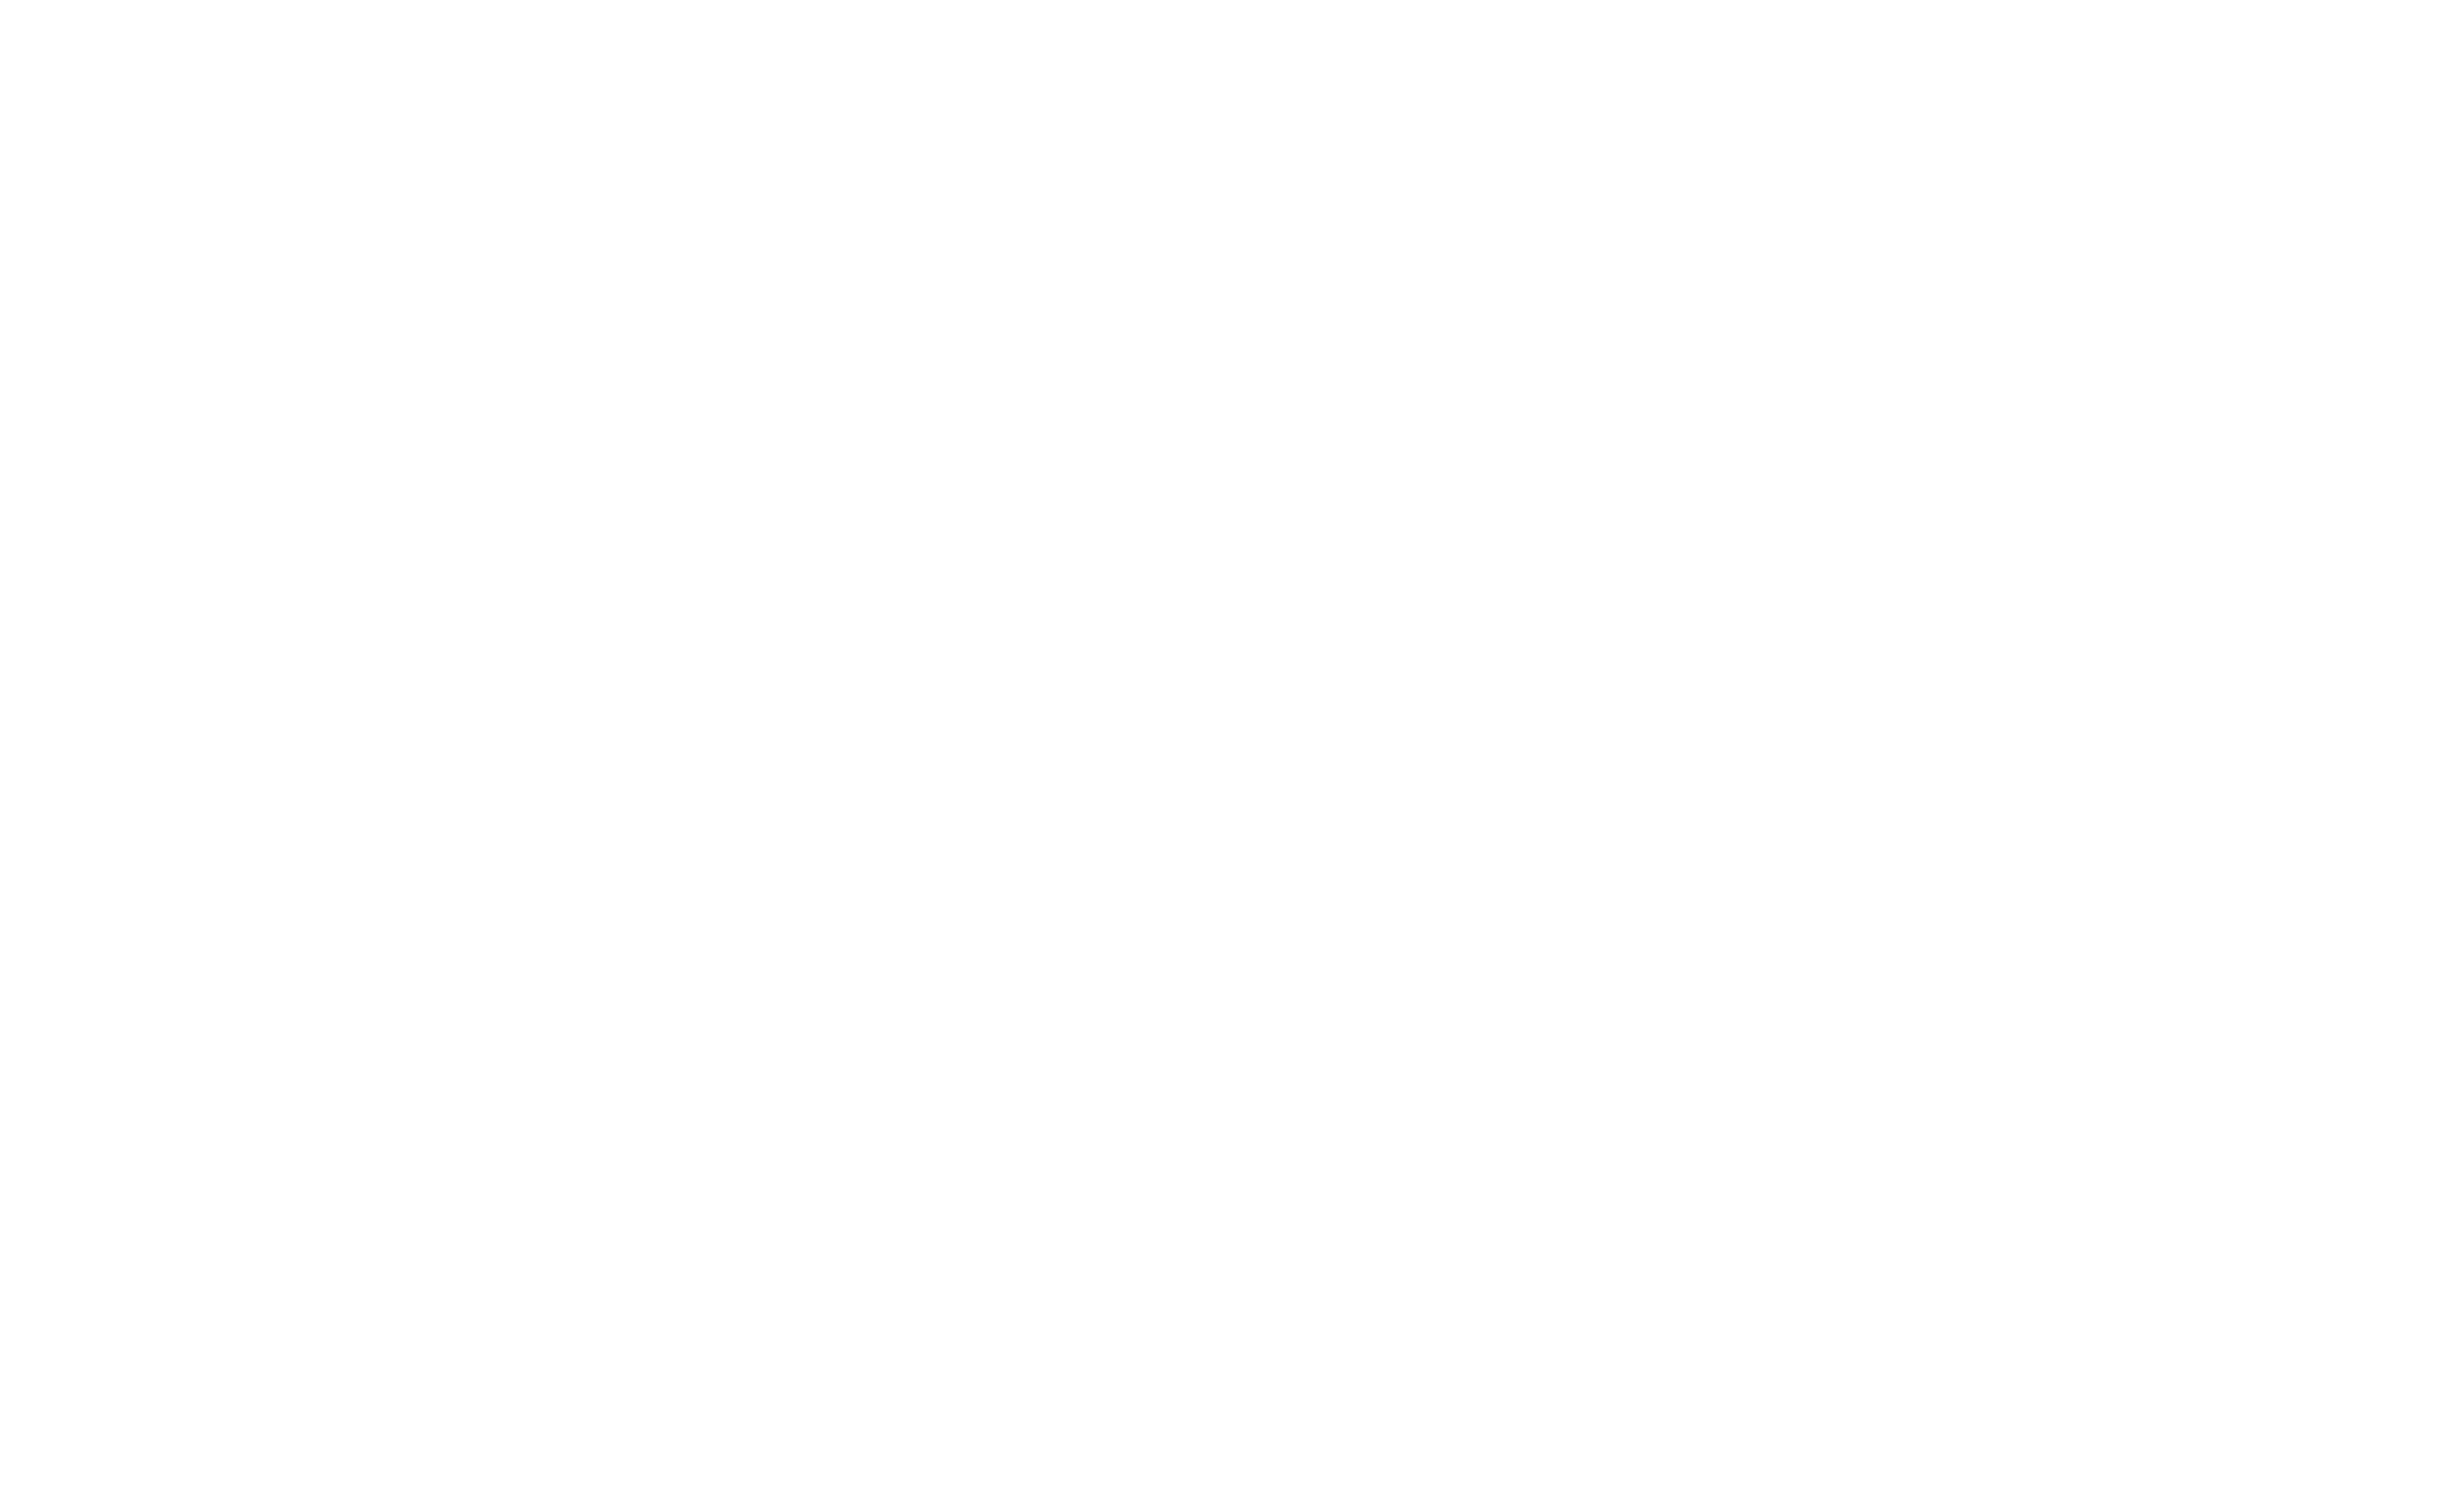 Logo CBO